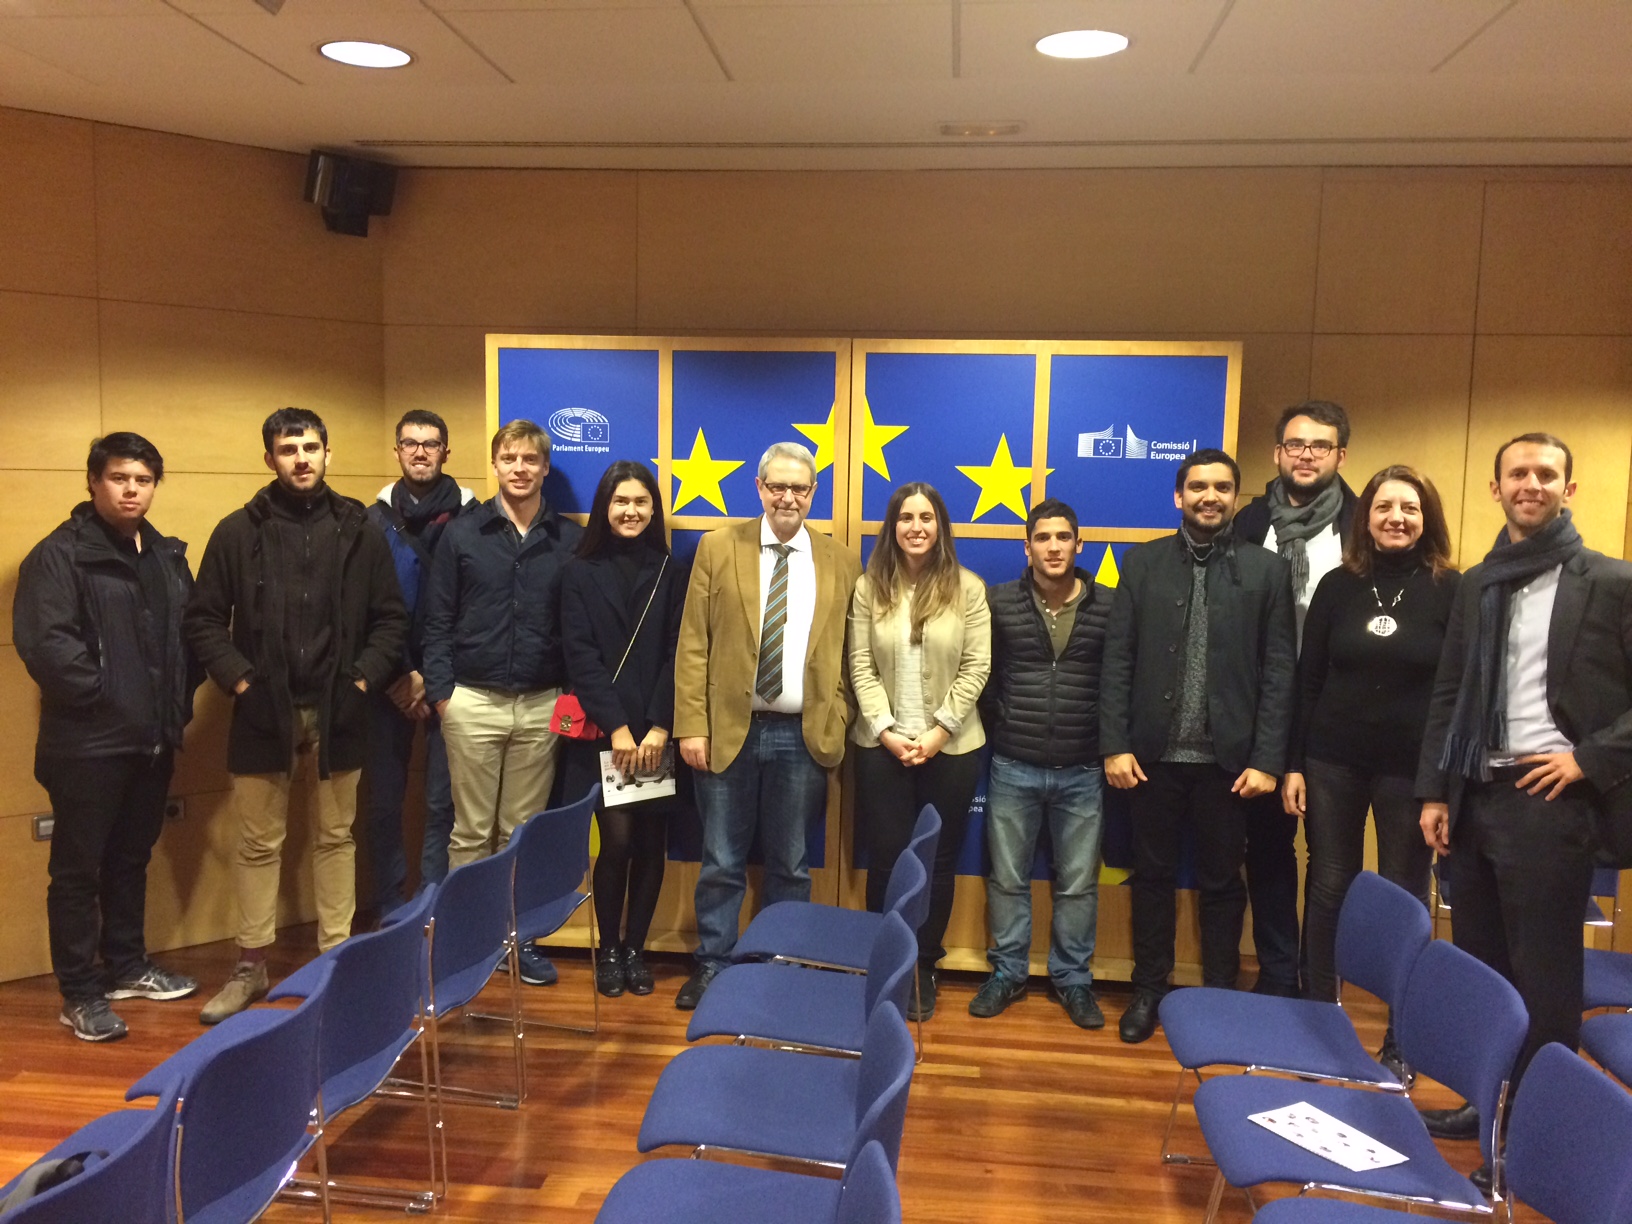 Concluding session of the "EU Political process” class